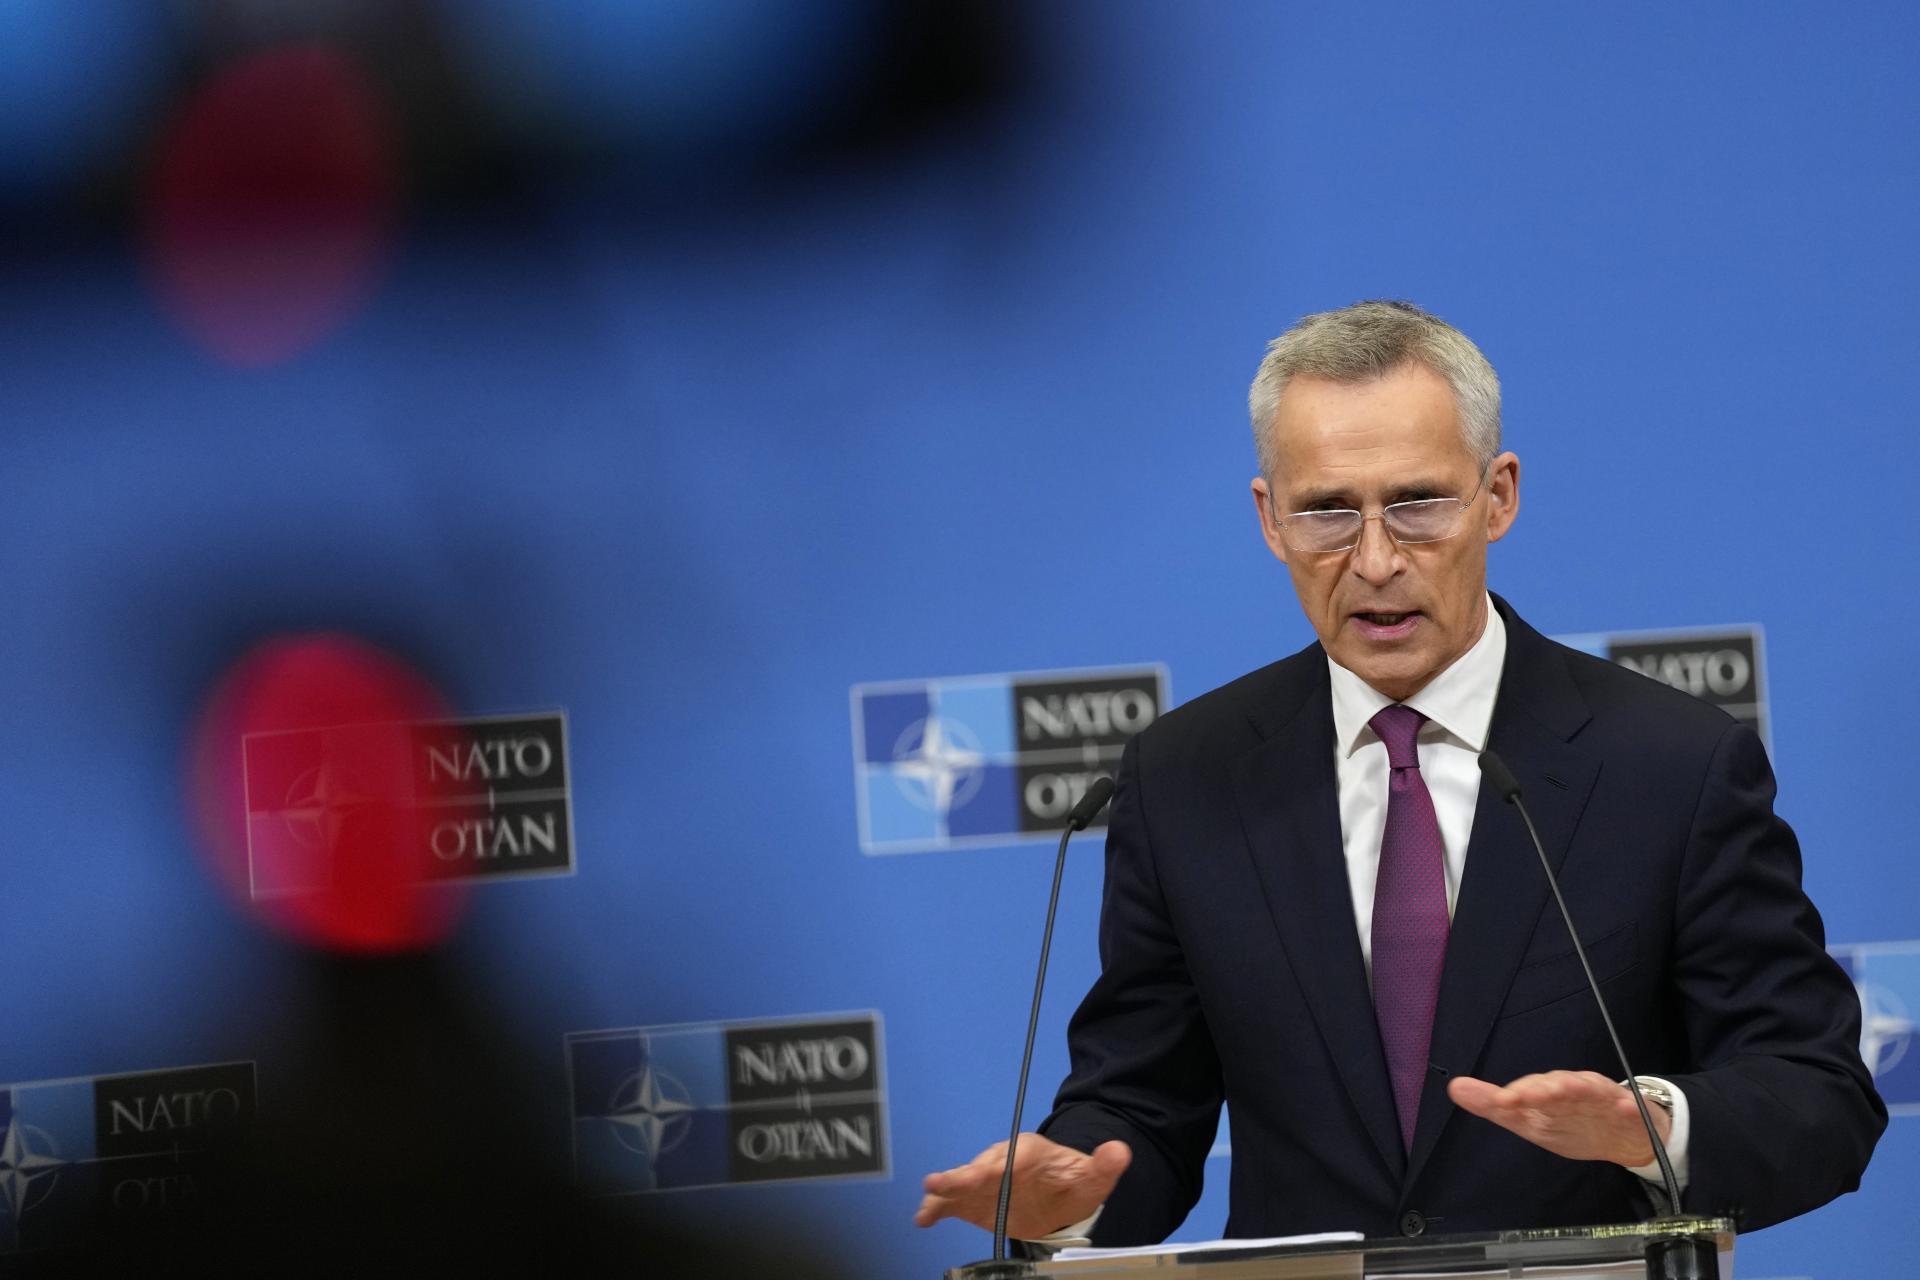 NATO buduje vzťahy s indopacifickými partnermi. Svet je čoraz nebezpečnejší, tvrdí Stoltenberg